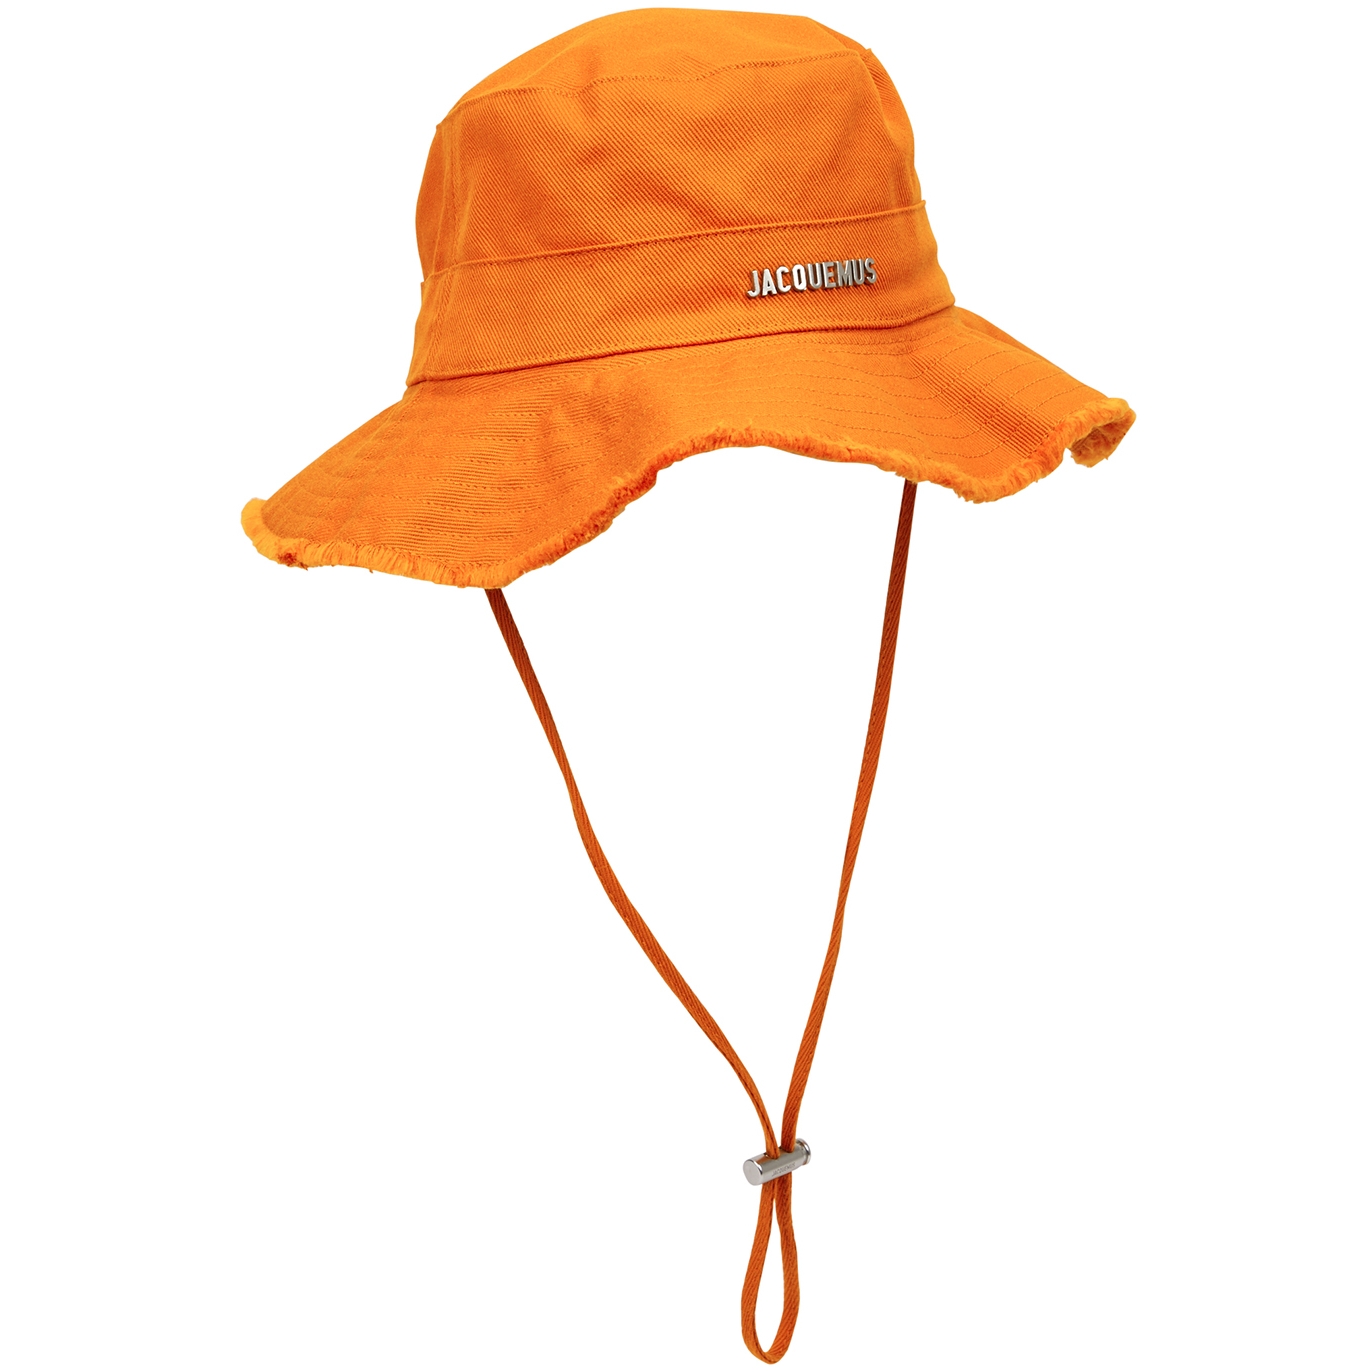 Jacquemus Le Bob Artichaut Canvas Bucket Hat, Bucket Hat, Orange